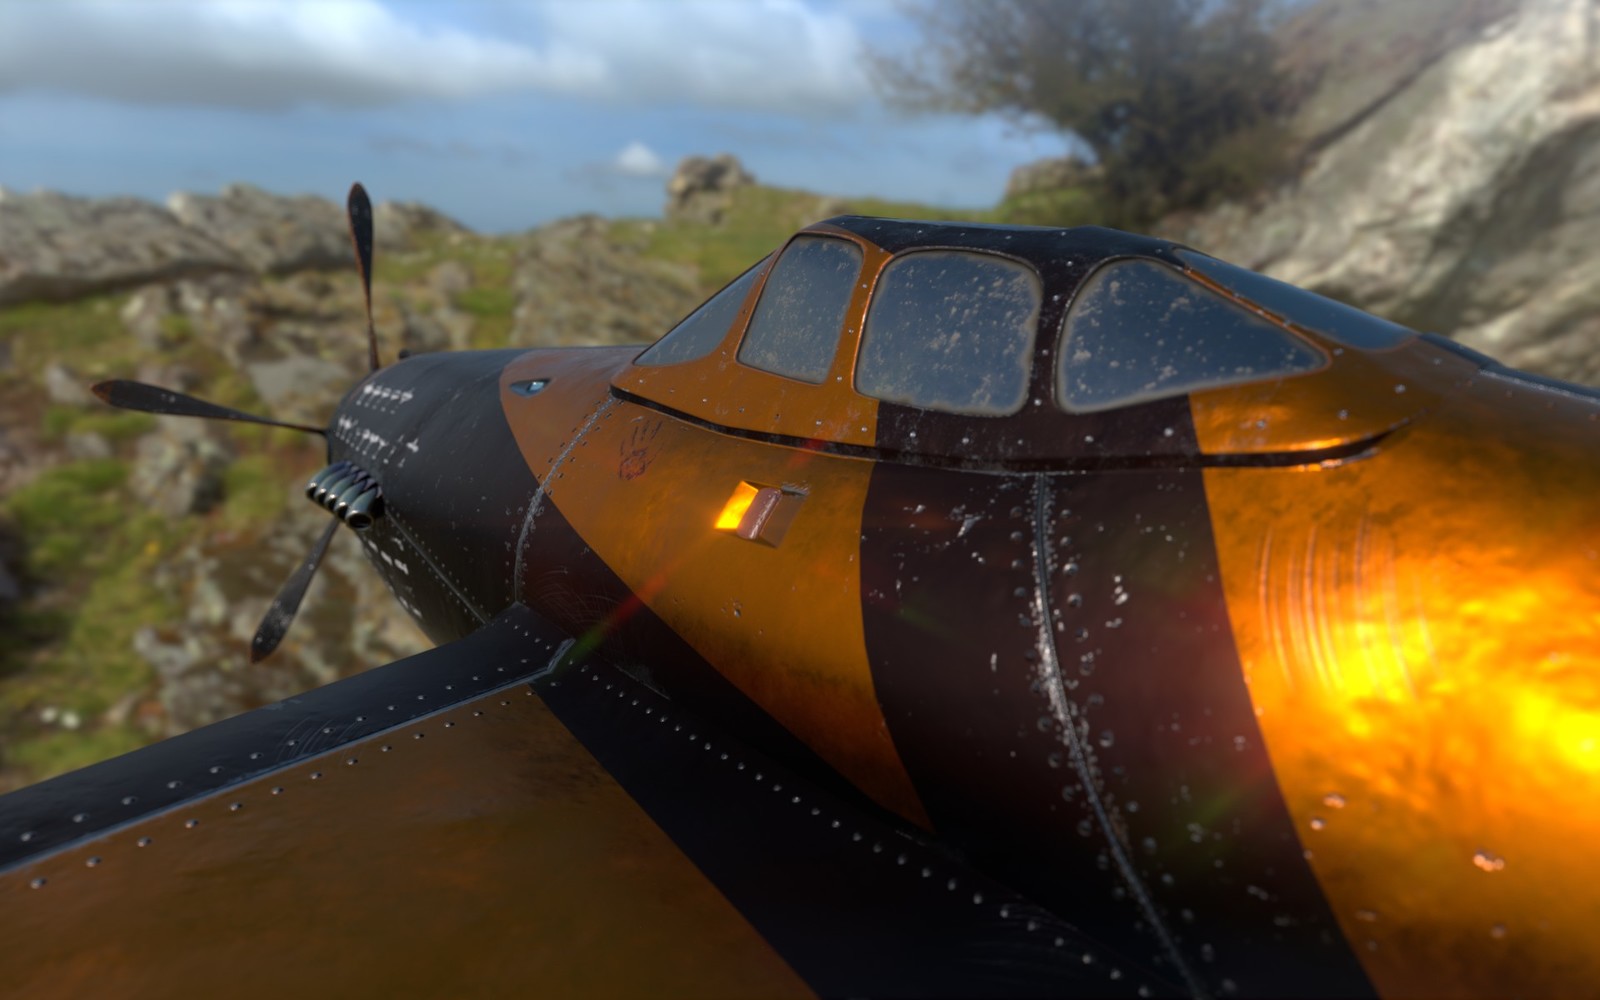 Cockpit details